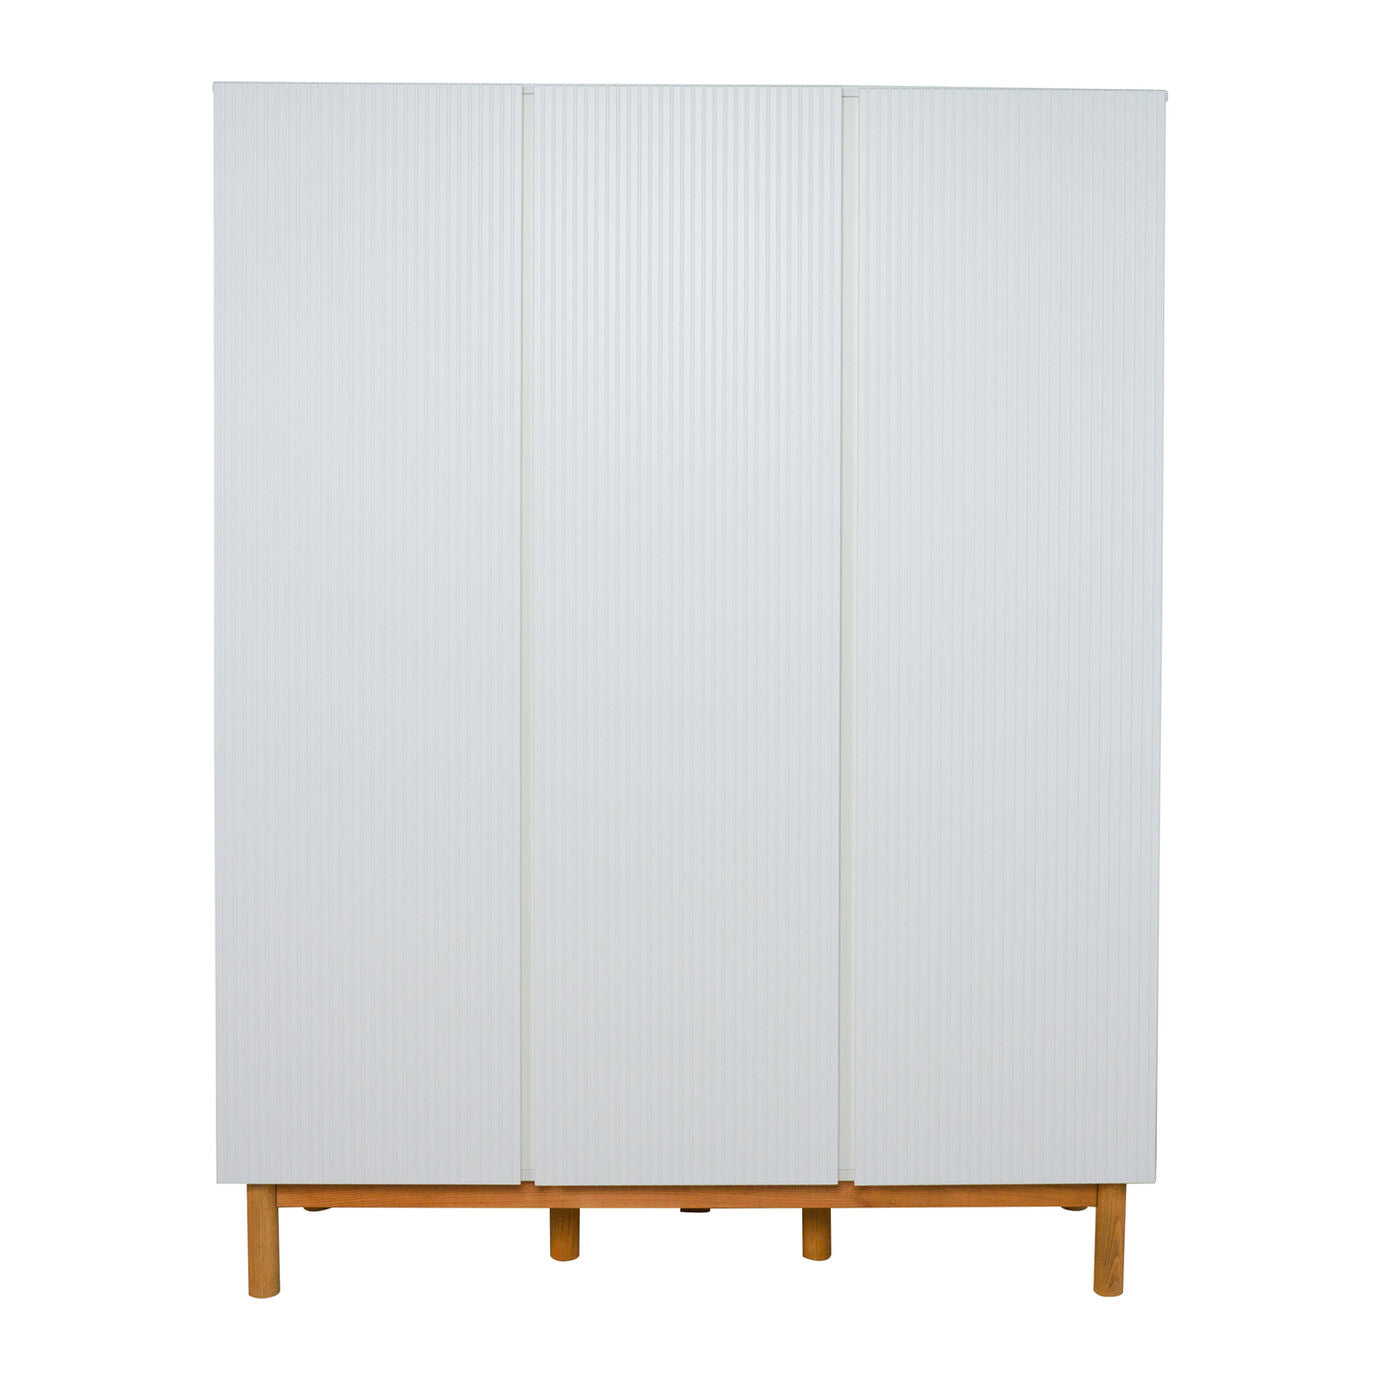 Armoire 3 portes MOOD Quax - Cabinets & Storage par Quax